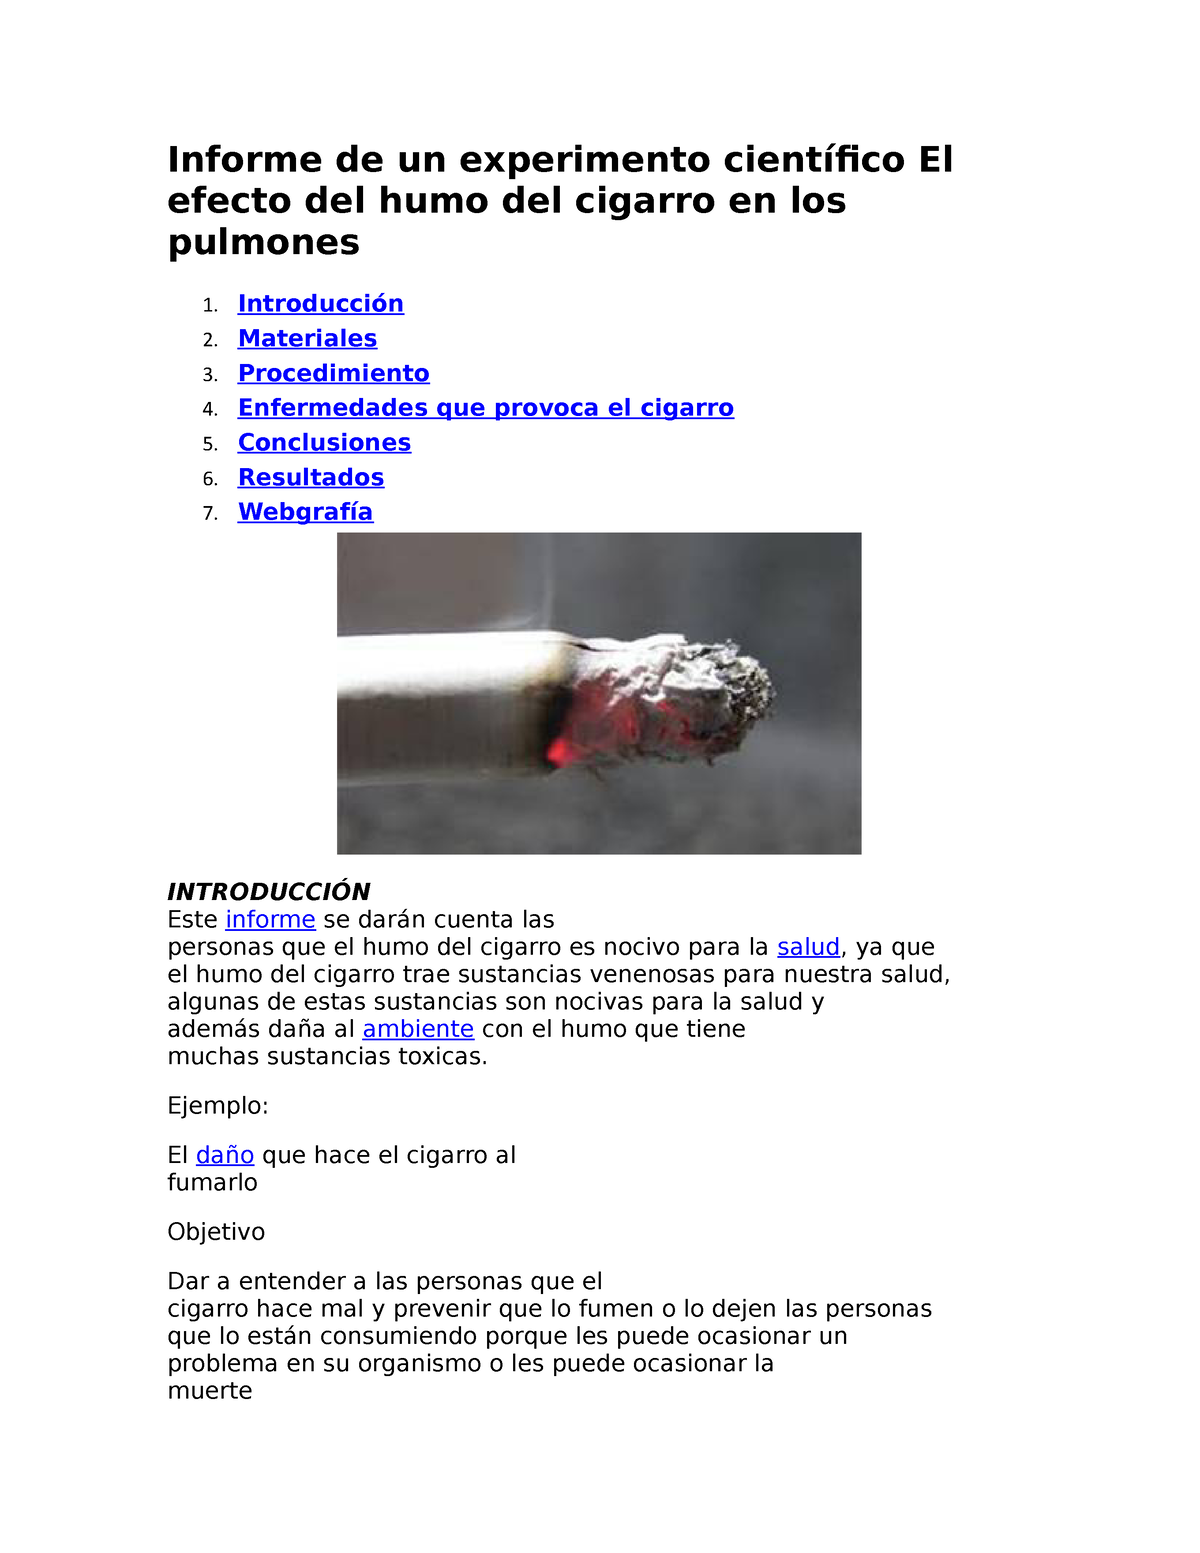 informe de un experimento científico el efecto del humo del cigarro en